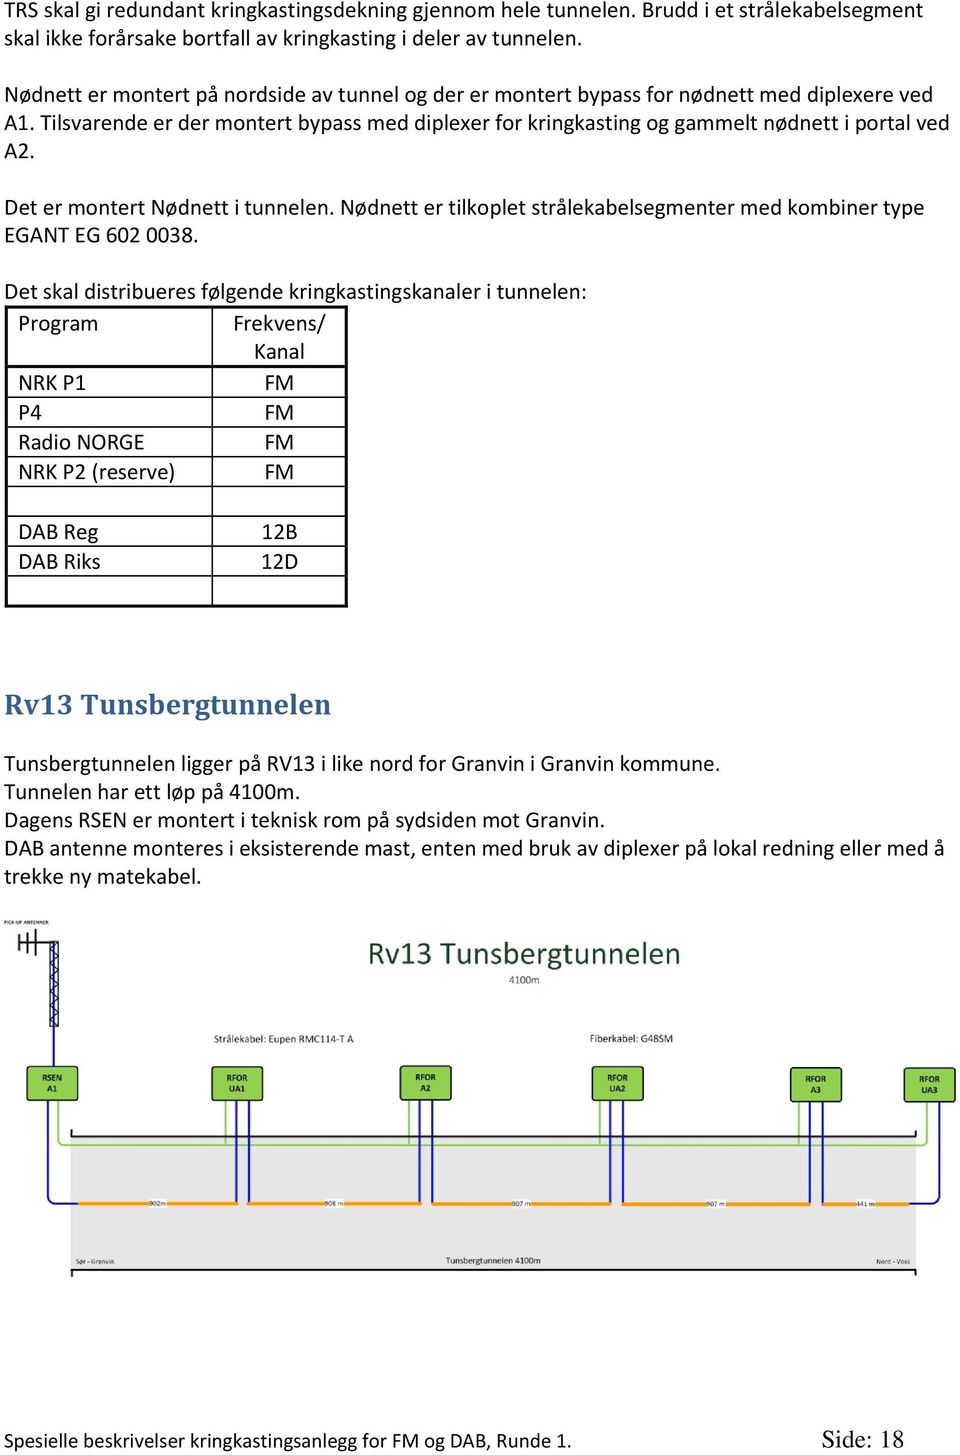 Nødnett er tilkoplet strålekabelsegmenter med kombiner type Det skal distribueres følgende kringkastingskanaler i tunnelen: Program Frekvens/ Kanal Radio NORGE NRK P2 (reserve) DAB Riks Rv13